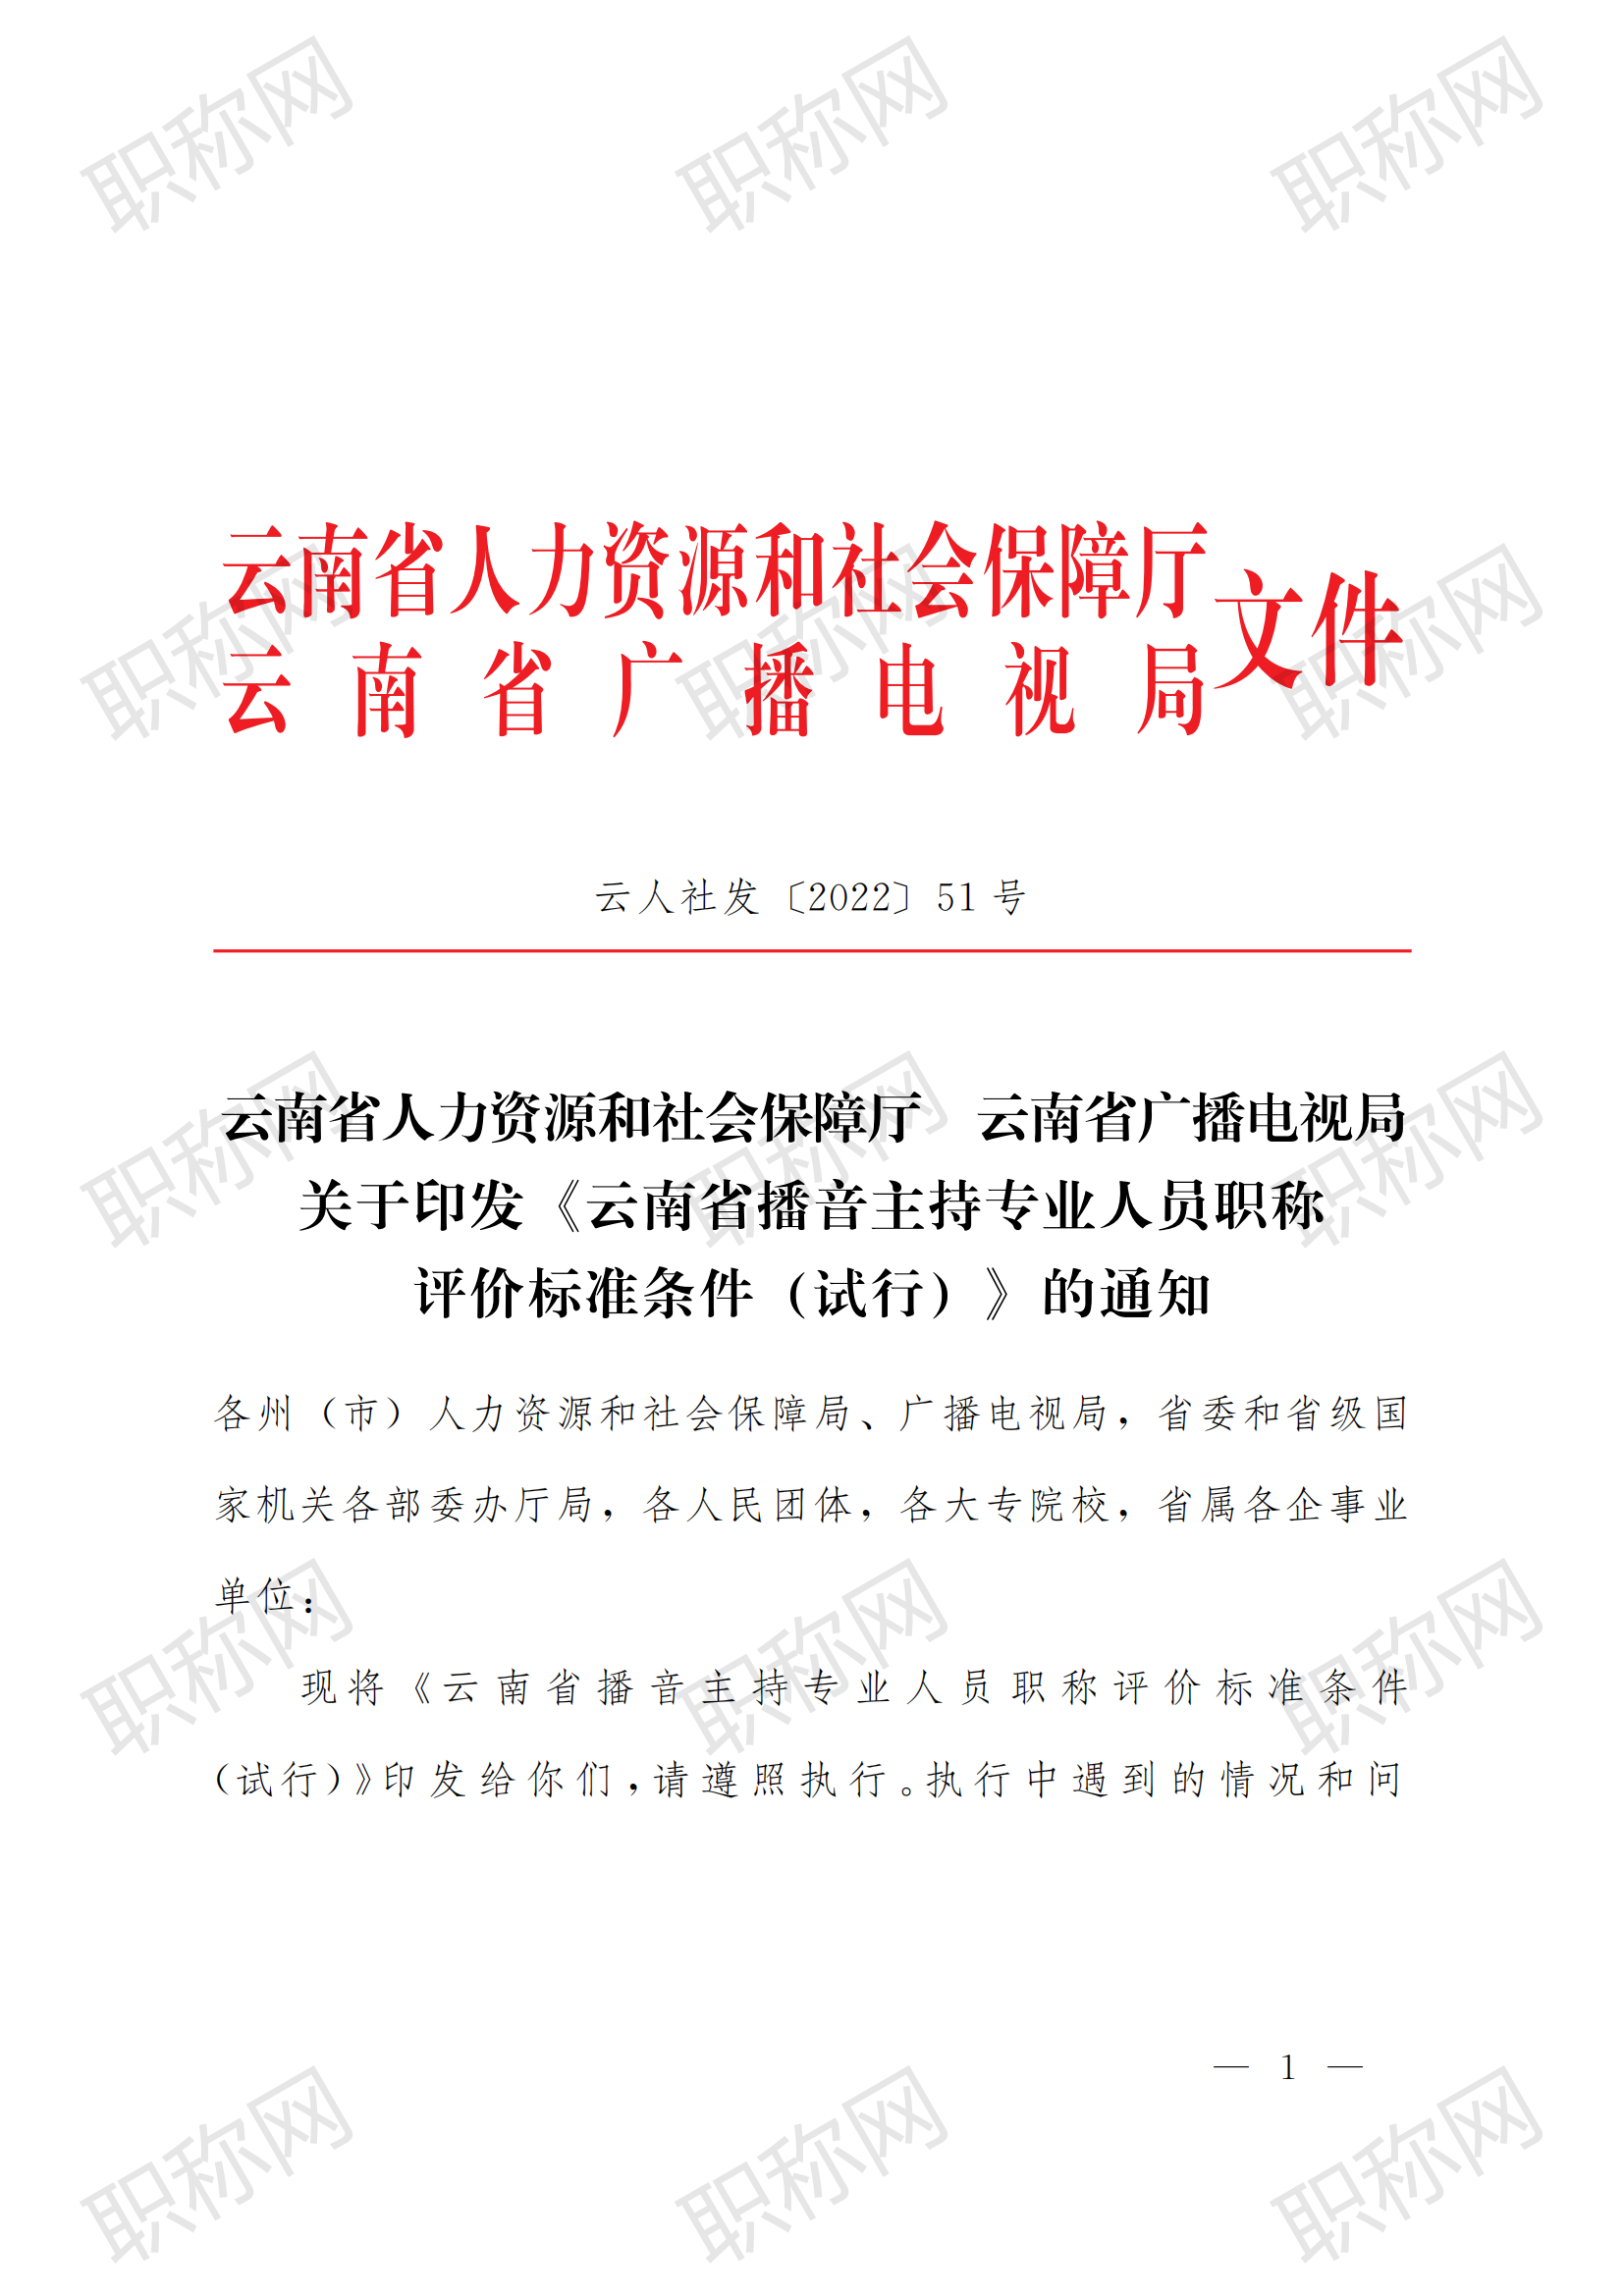 关于印发云南省播音主持专业人员职称评价标准条件 (试行) 的通知_00.png